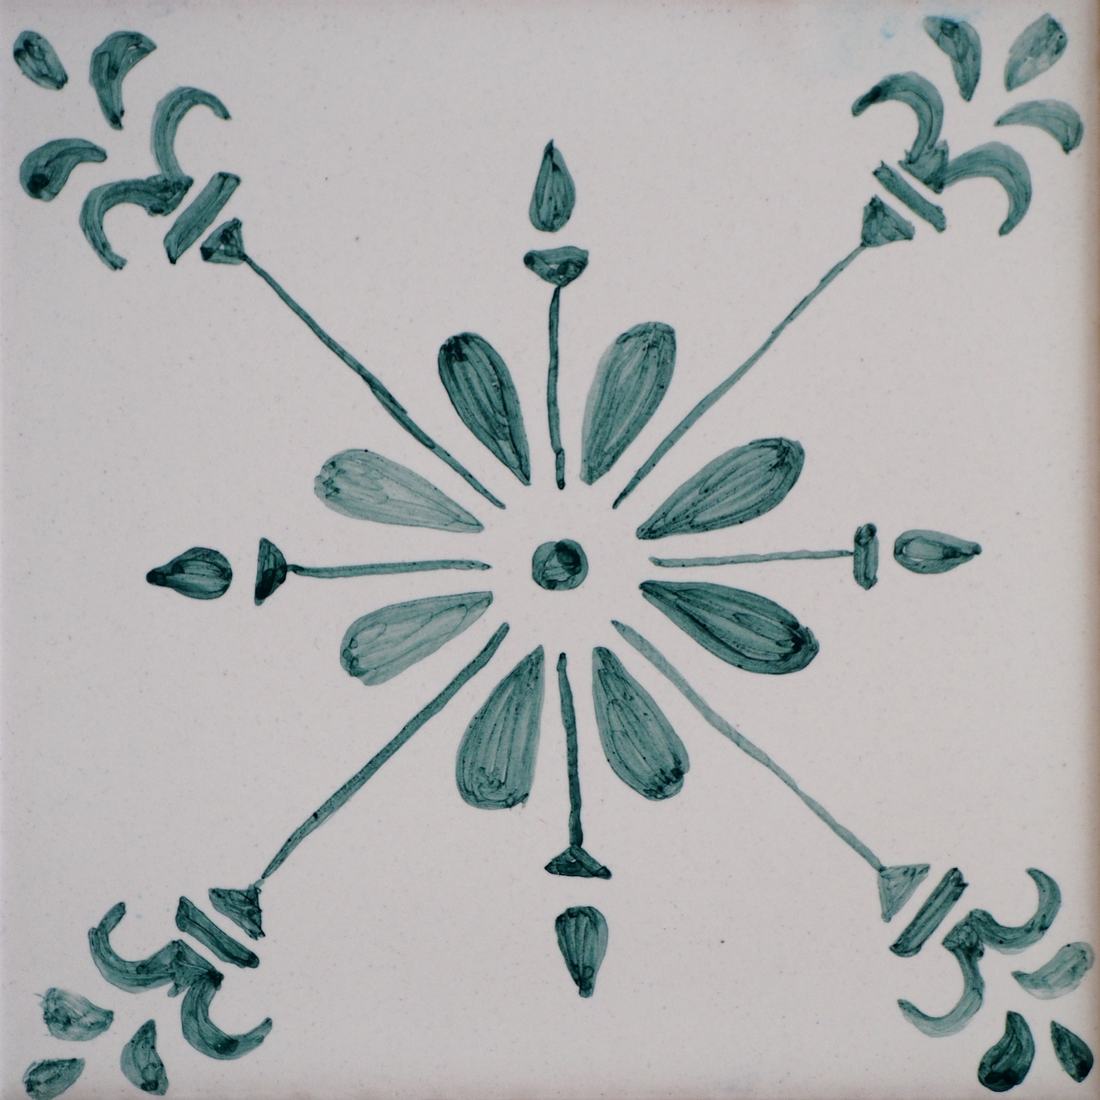 Kafelek z typowym wzorem portugalskim ornamentalnym, zielony